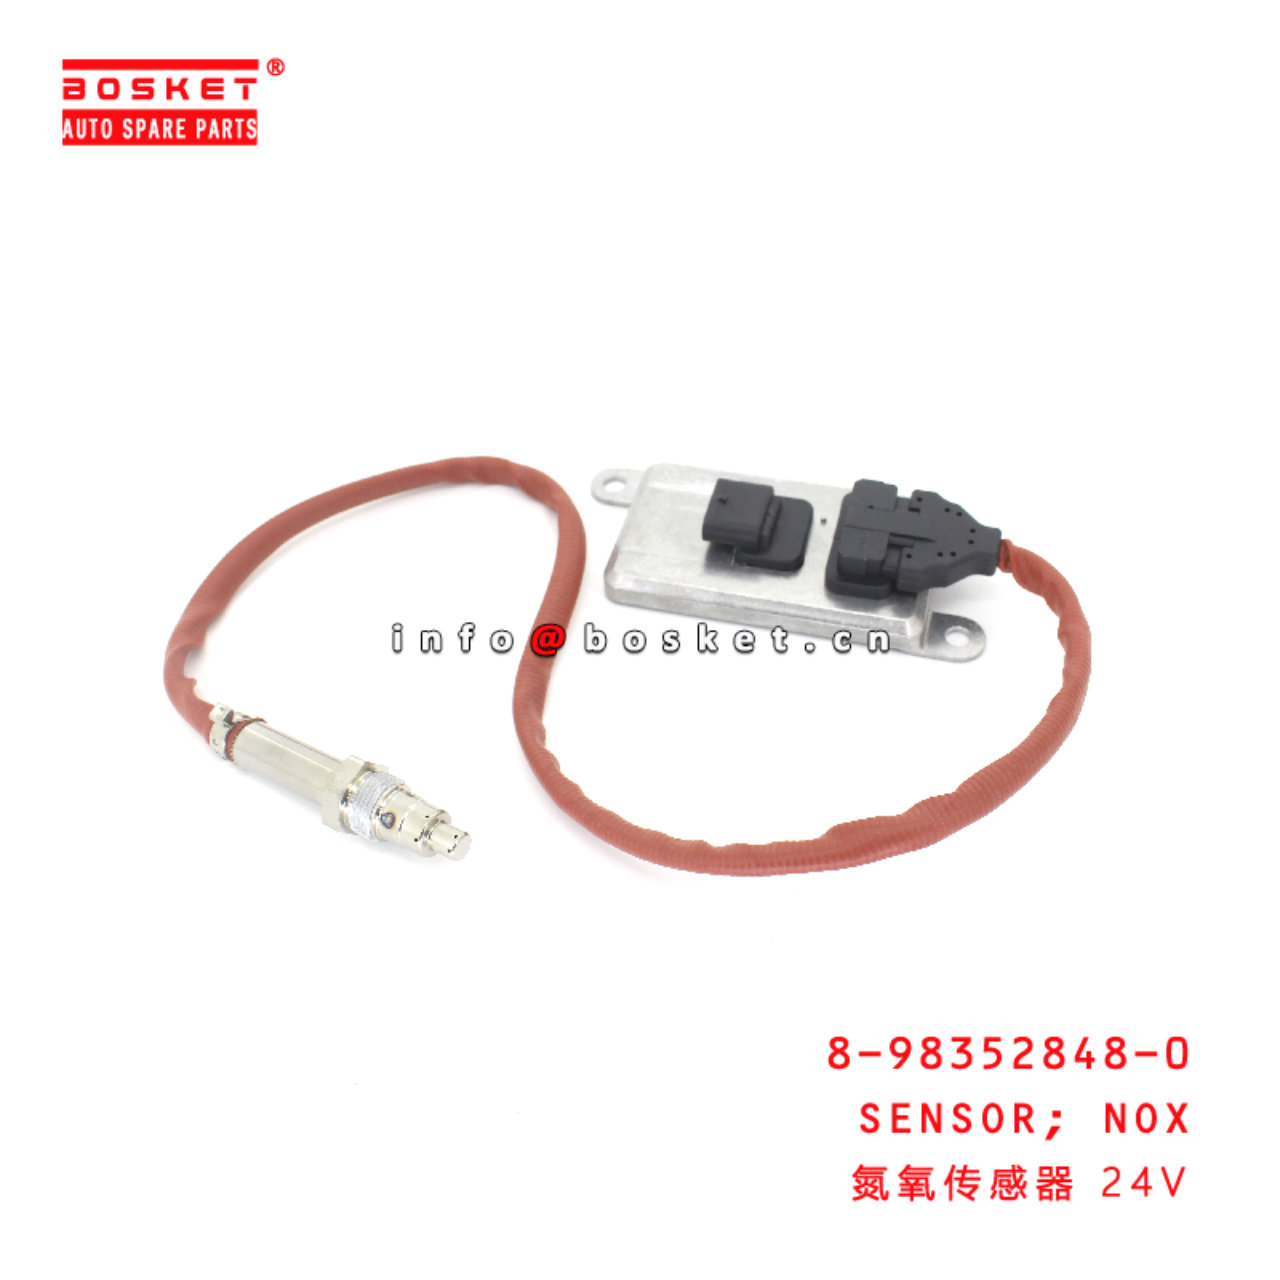 8-98352848-0 Nox Sensor suitable for ISUZU 8983528...